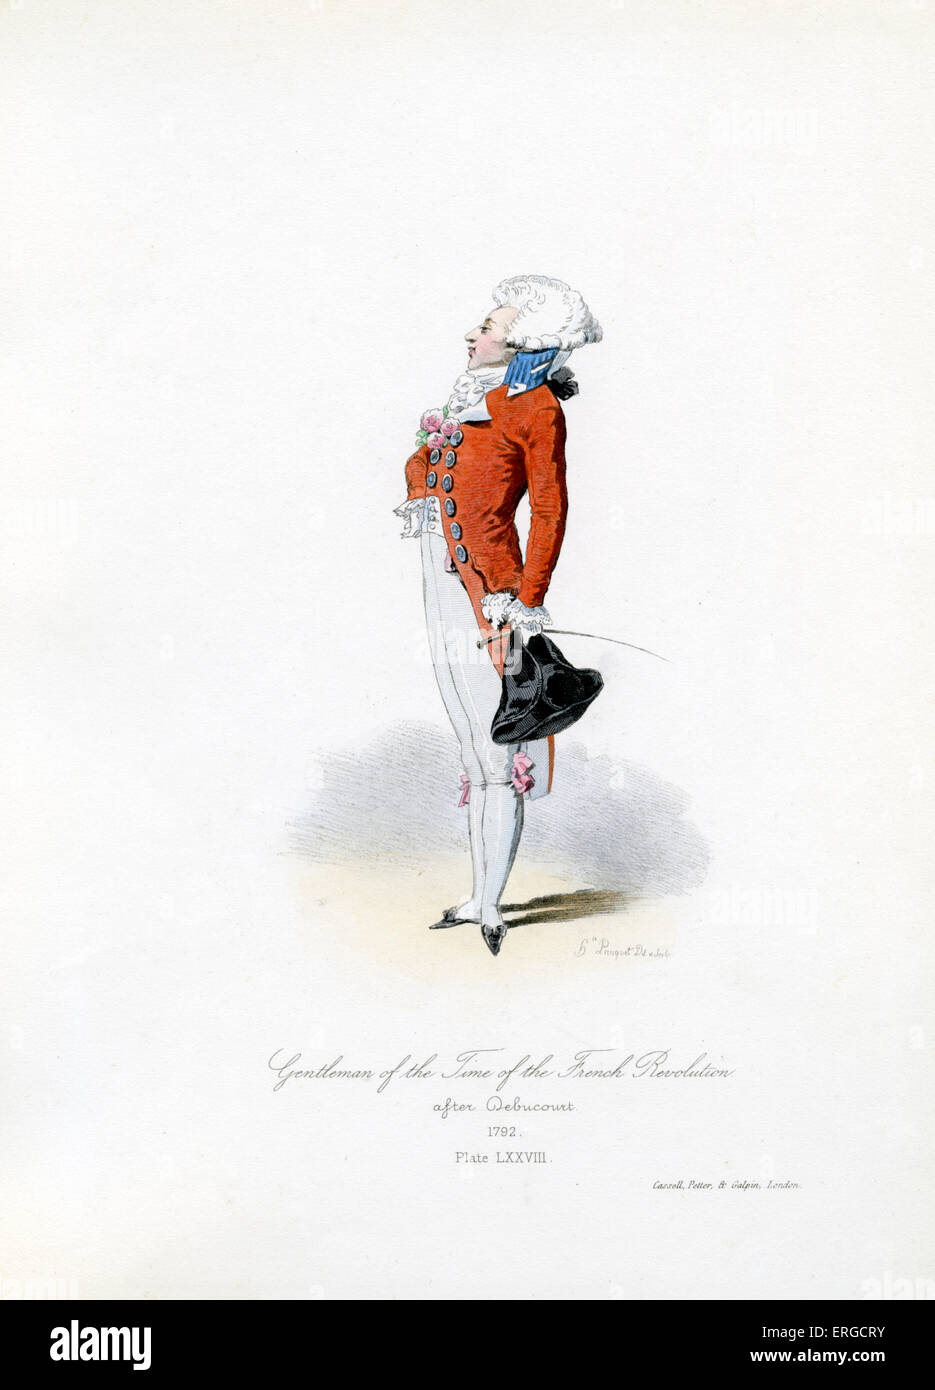 Gentiluomo del tempo della rivoluzione francese, 1792 - da incisione di Hippolyte Pauquet dopo Debucourt. Rivoluzione francese: Foto Stock